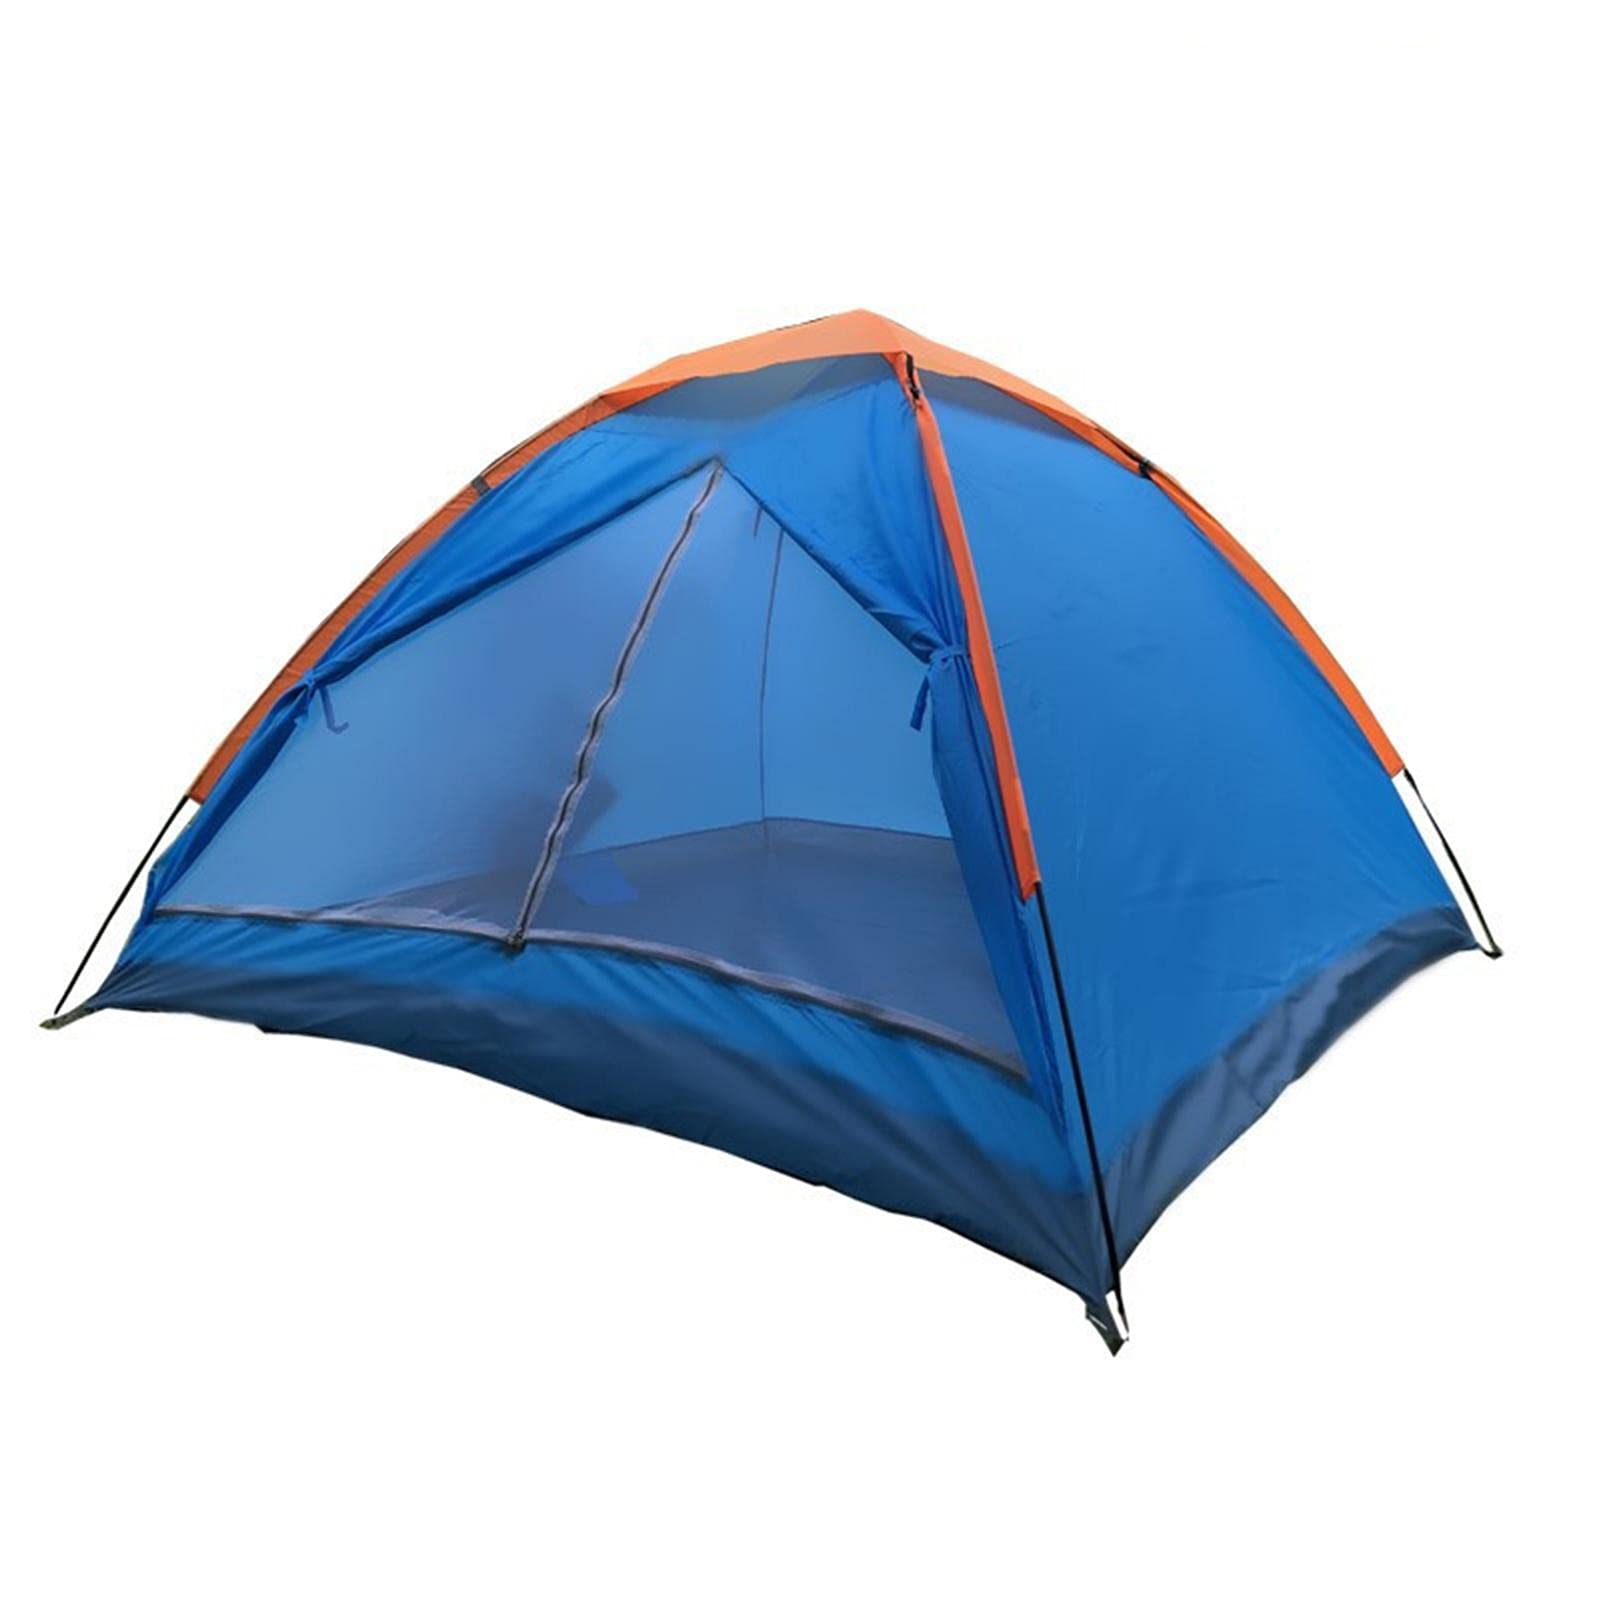 XGZ Campingzelt Outdoor-Zelt Sonnenschutz Einfach einzurichten Camp Wanderzelt Familien-Kuppelzelt für 3-4 Personen